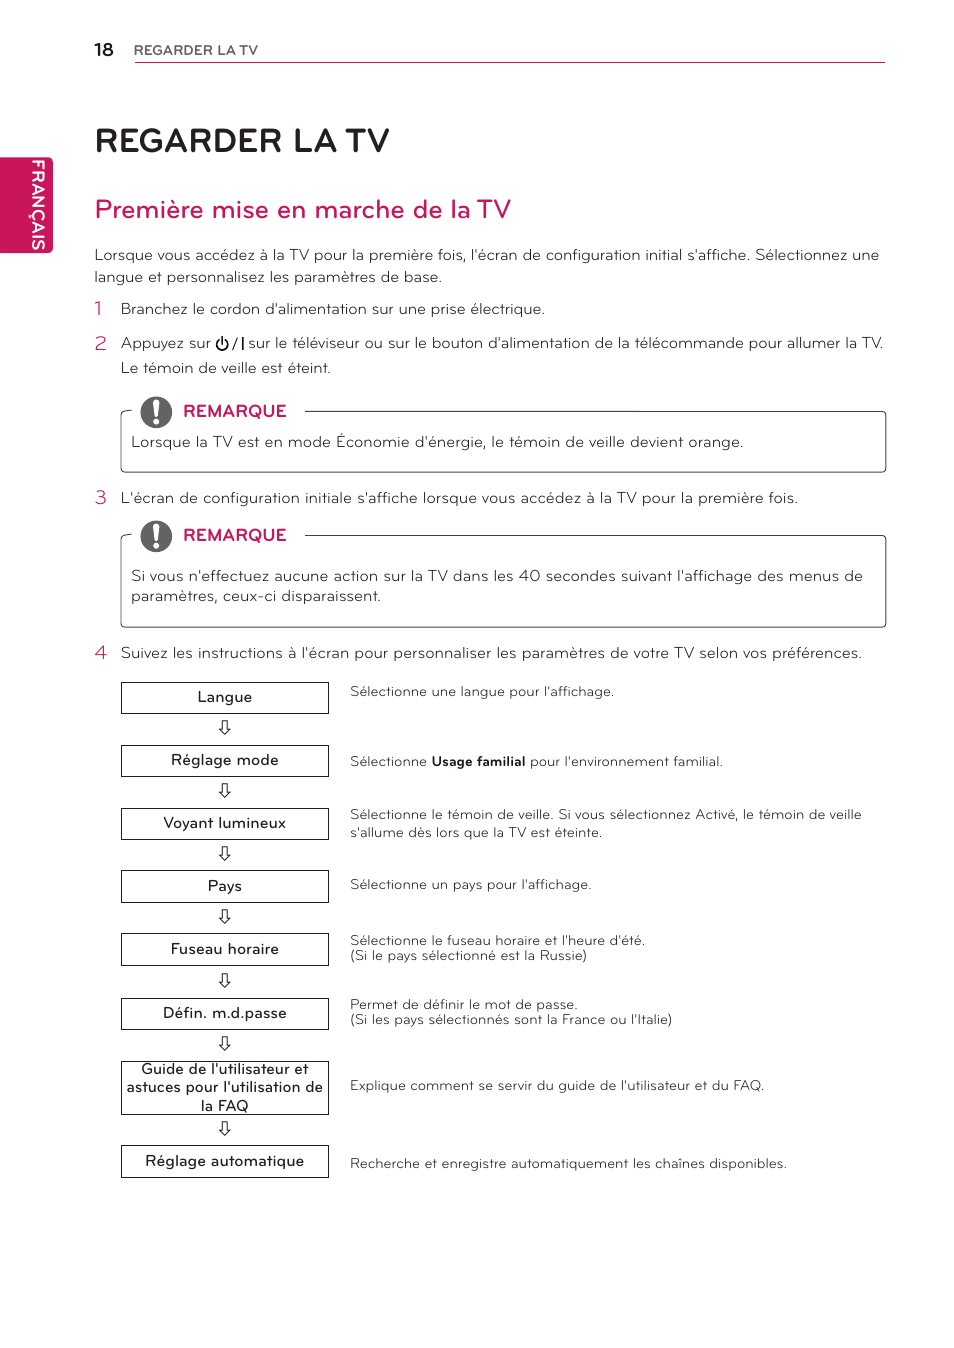 Regarder la tv, Première mise en marche de la tv | LG 24MN33D-PZ Manuel d'utilisation | Page 18 / 42